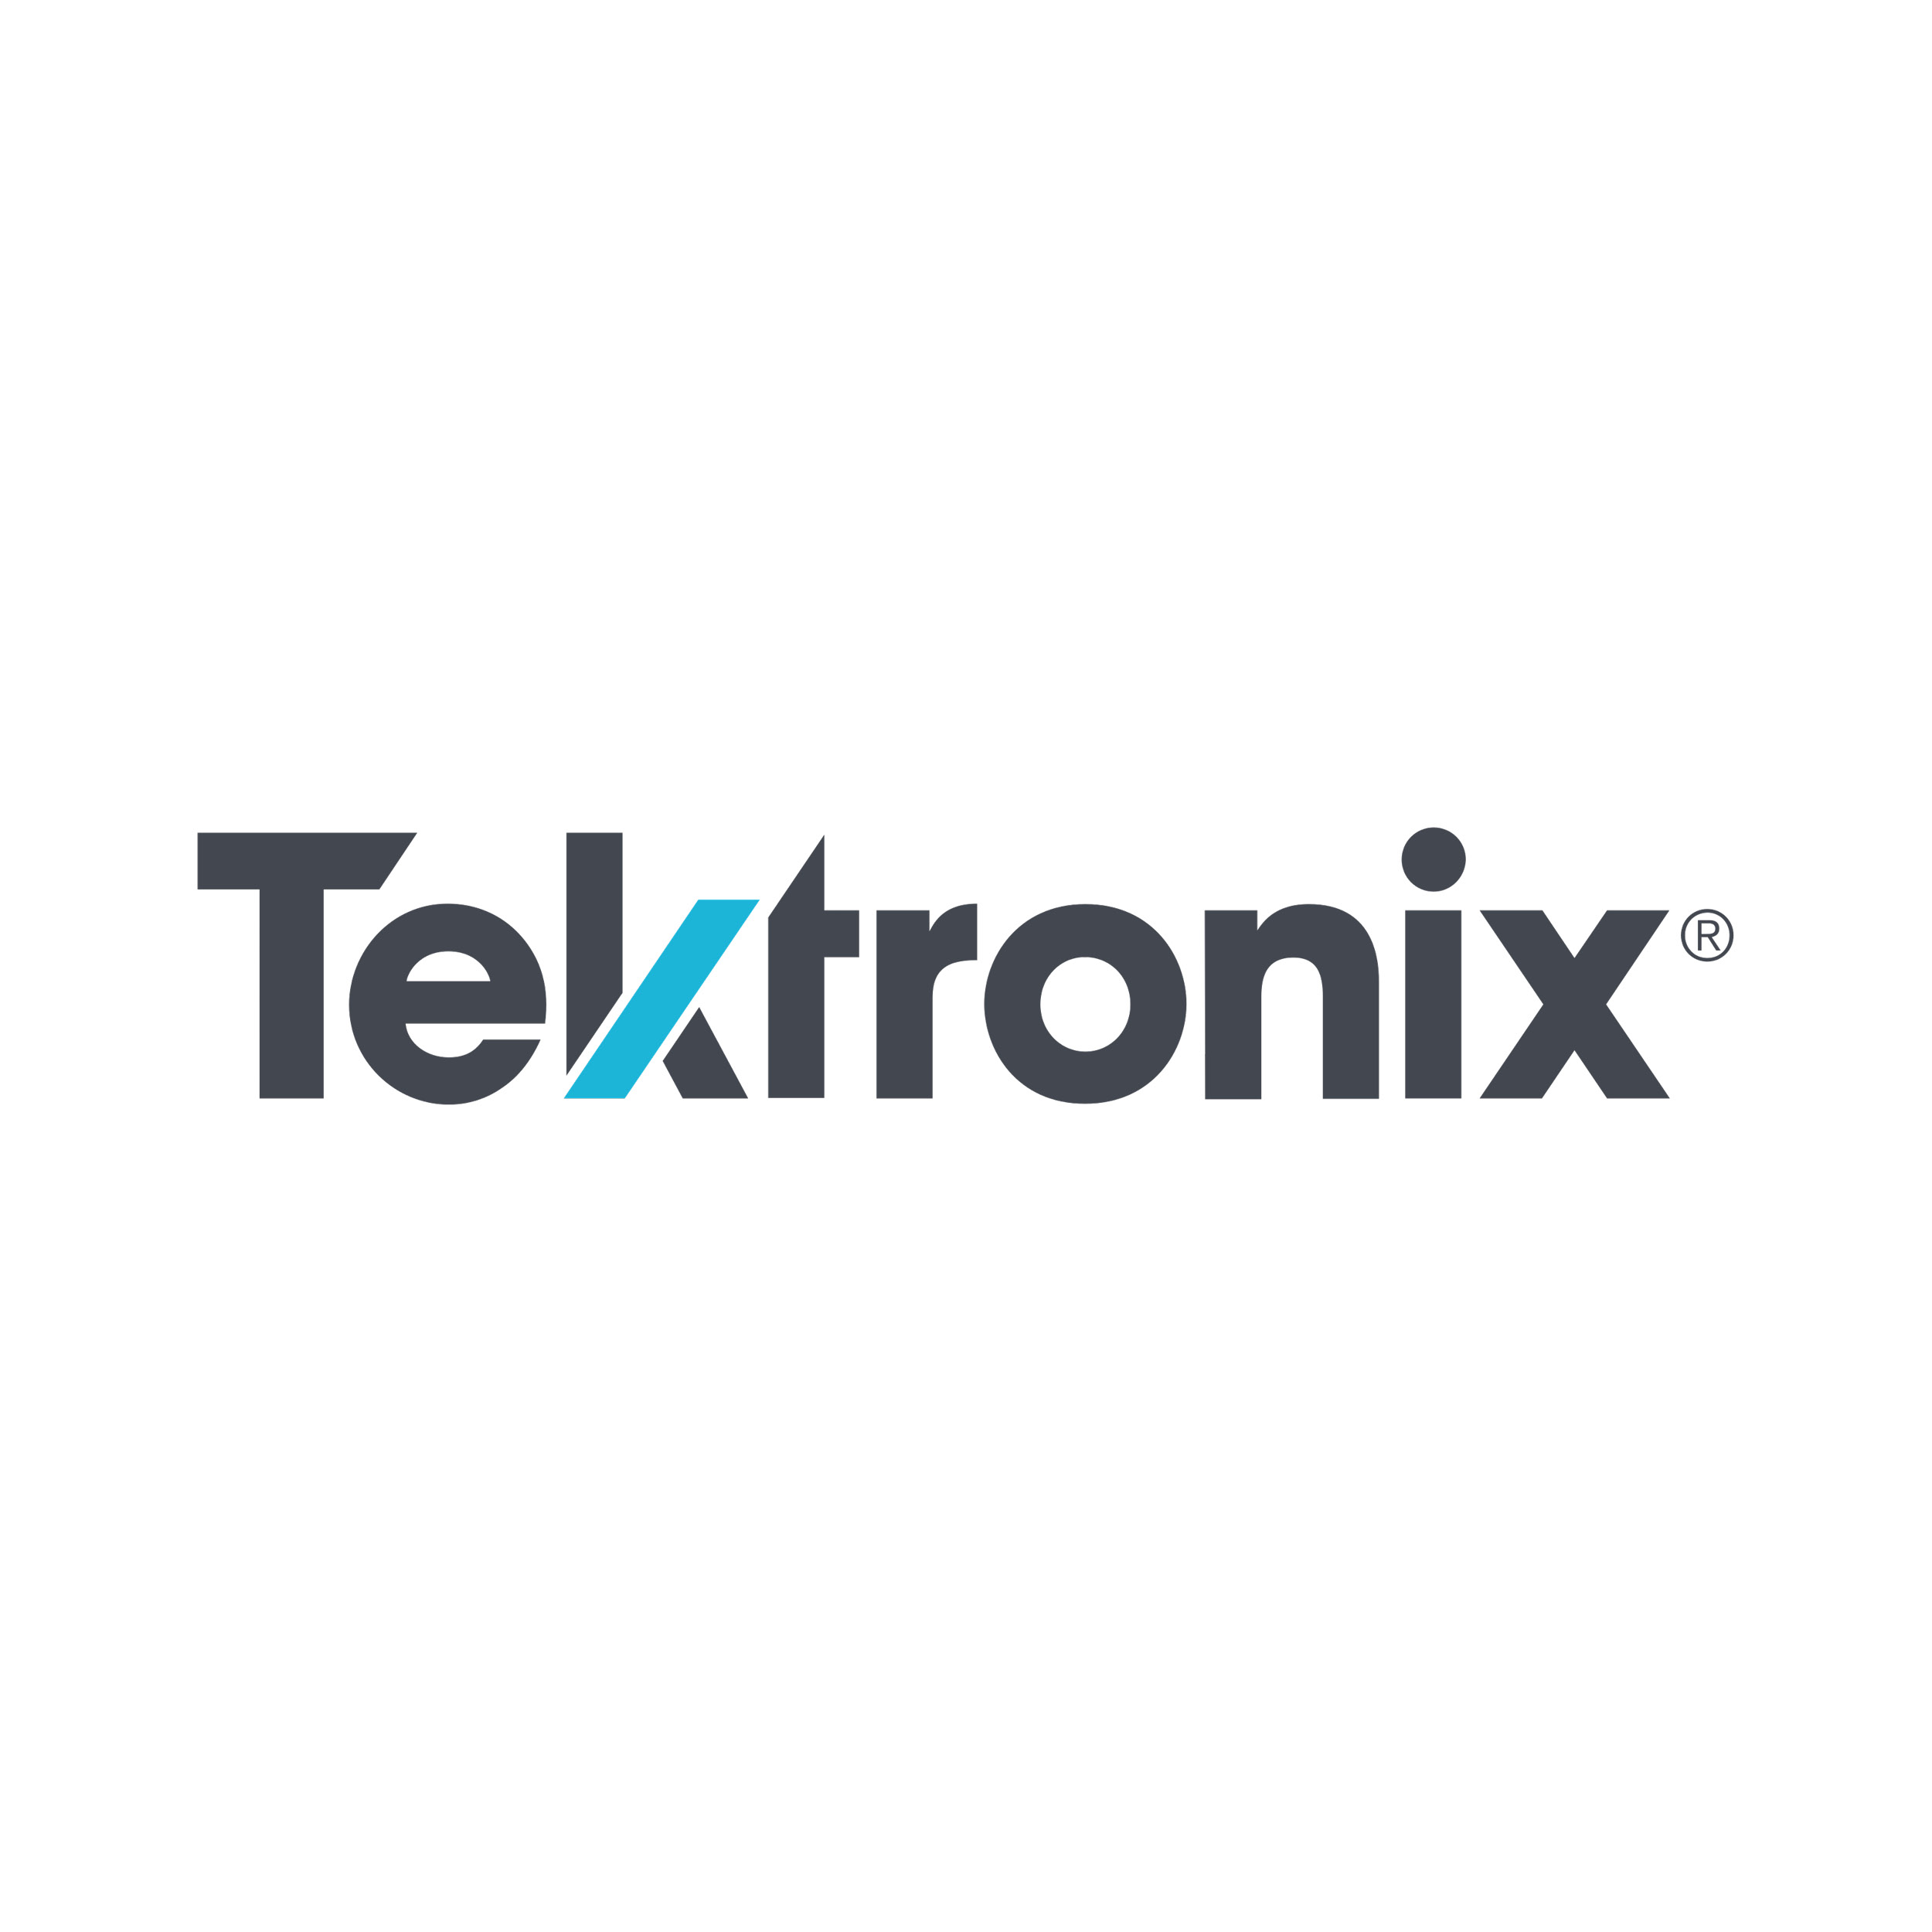 Logo de la marque référence Tektronix